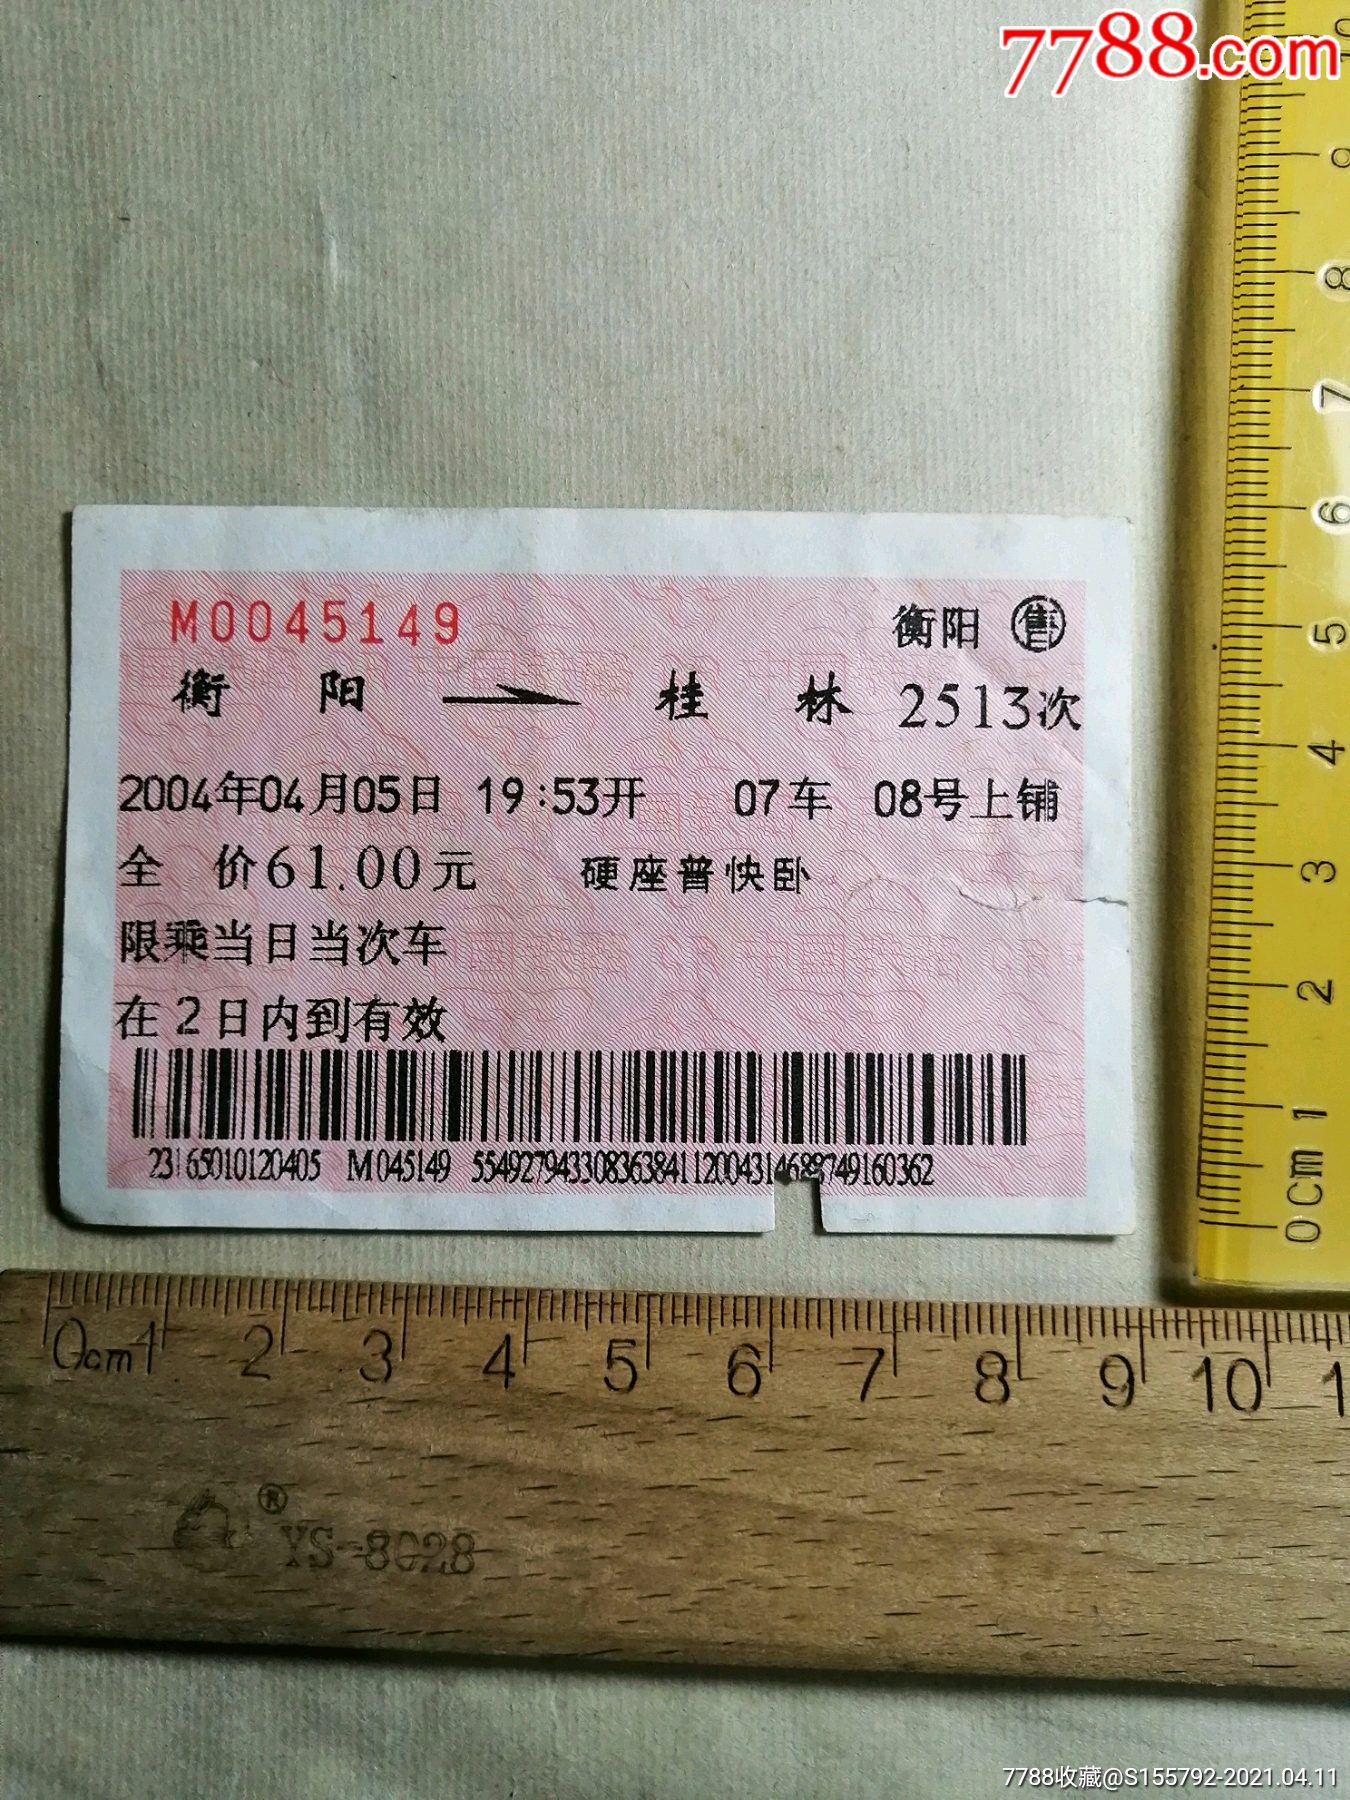 什么是捡漏票_火车票有上角写的京ad售的票是只有北京站出售么_网上火车票是怎么放票的